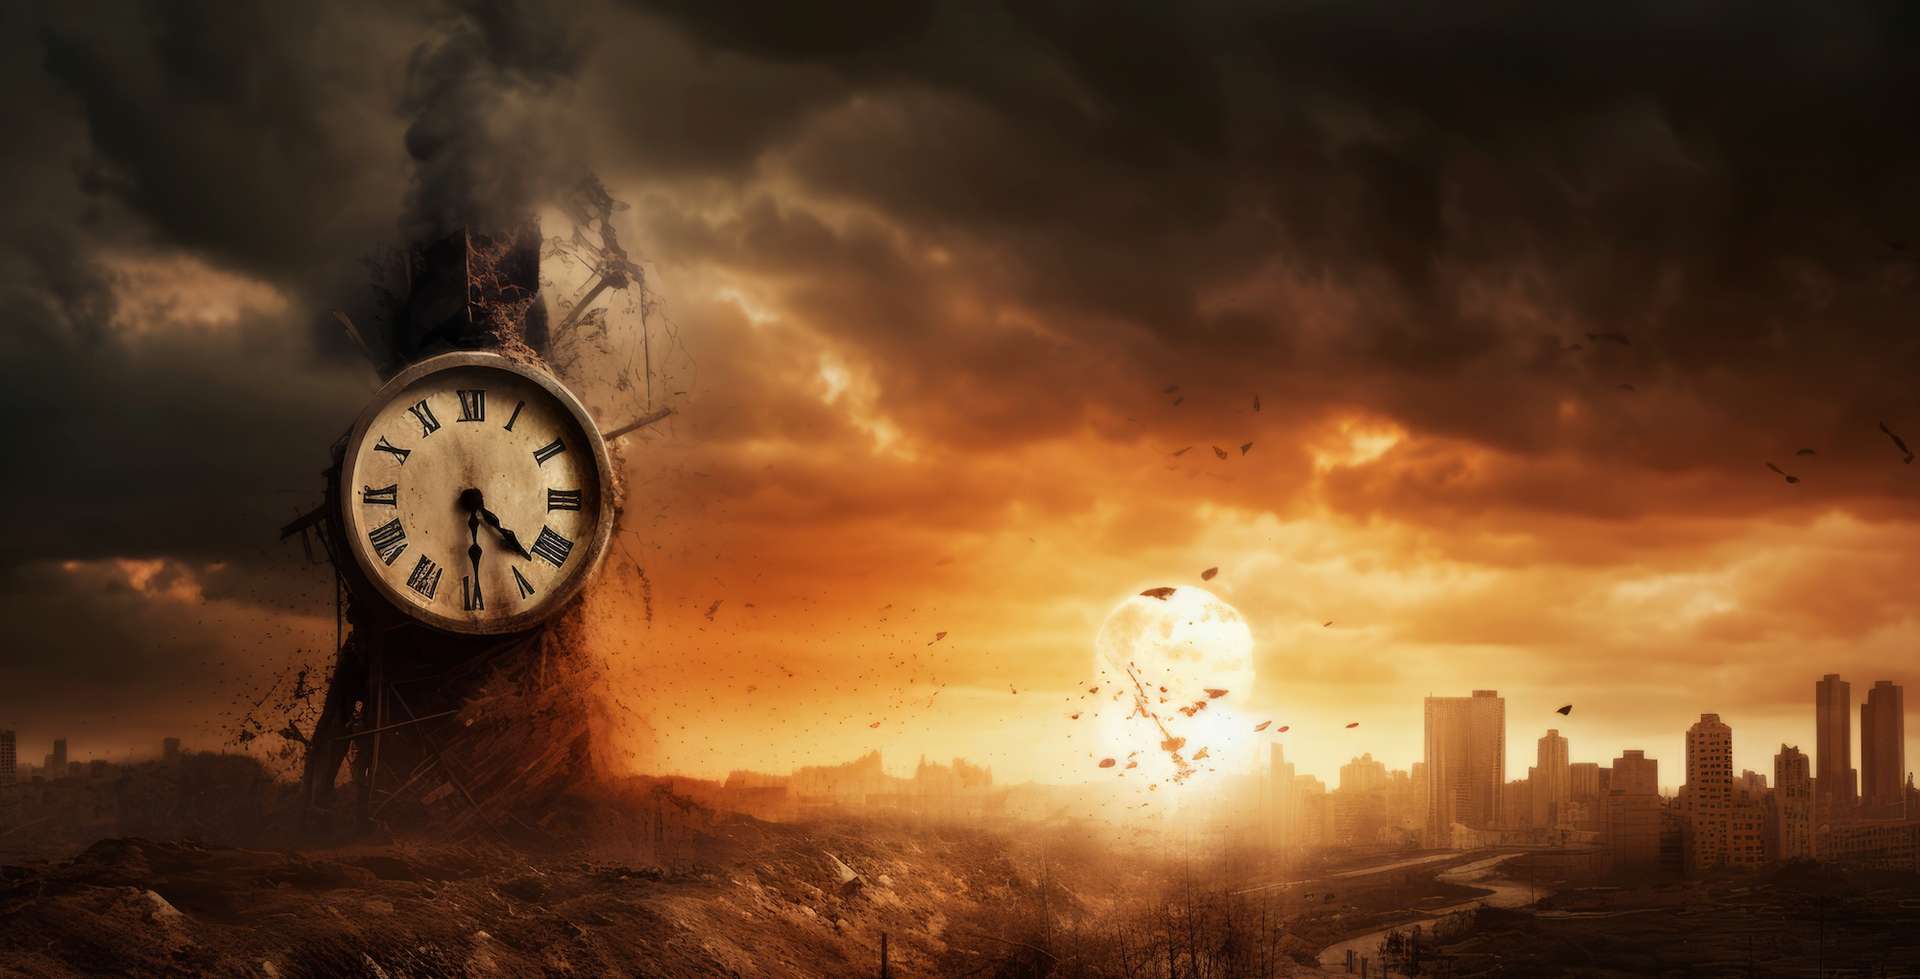 L'horloge de la fin du monde » n'a jamais été aussi proche de minuit,  l'heure fatidique à ne jamais atteindre !